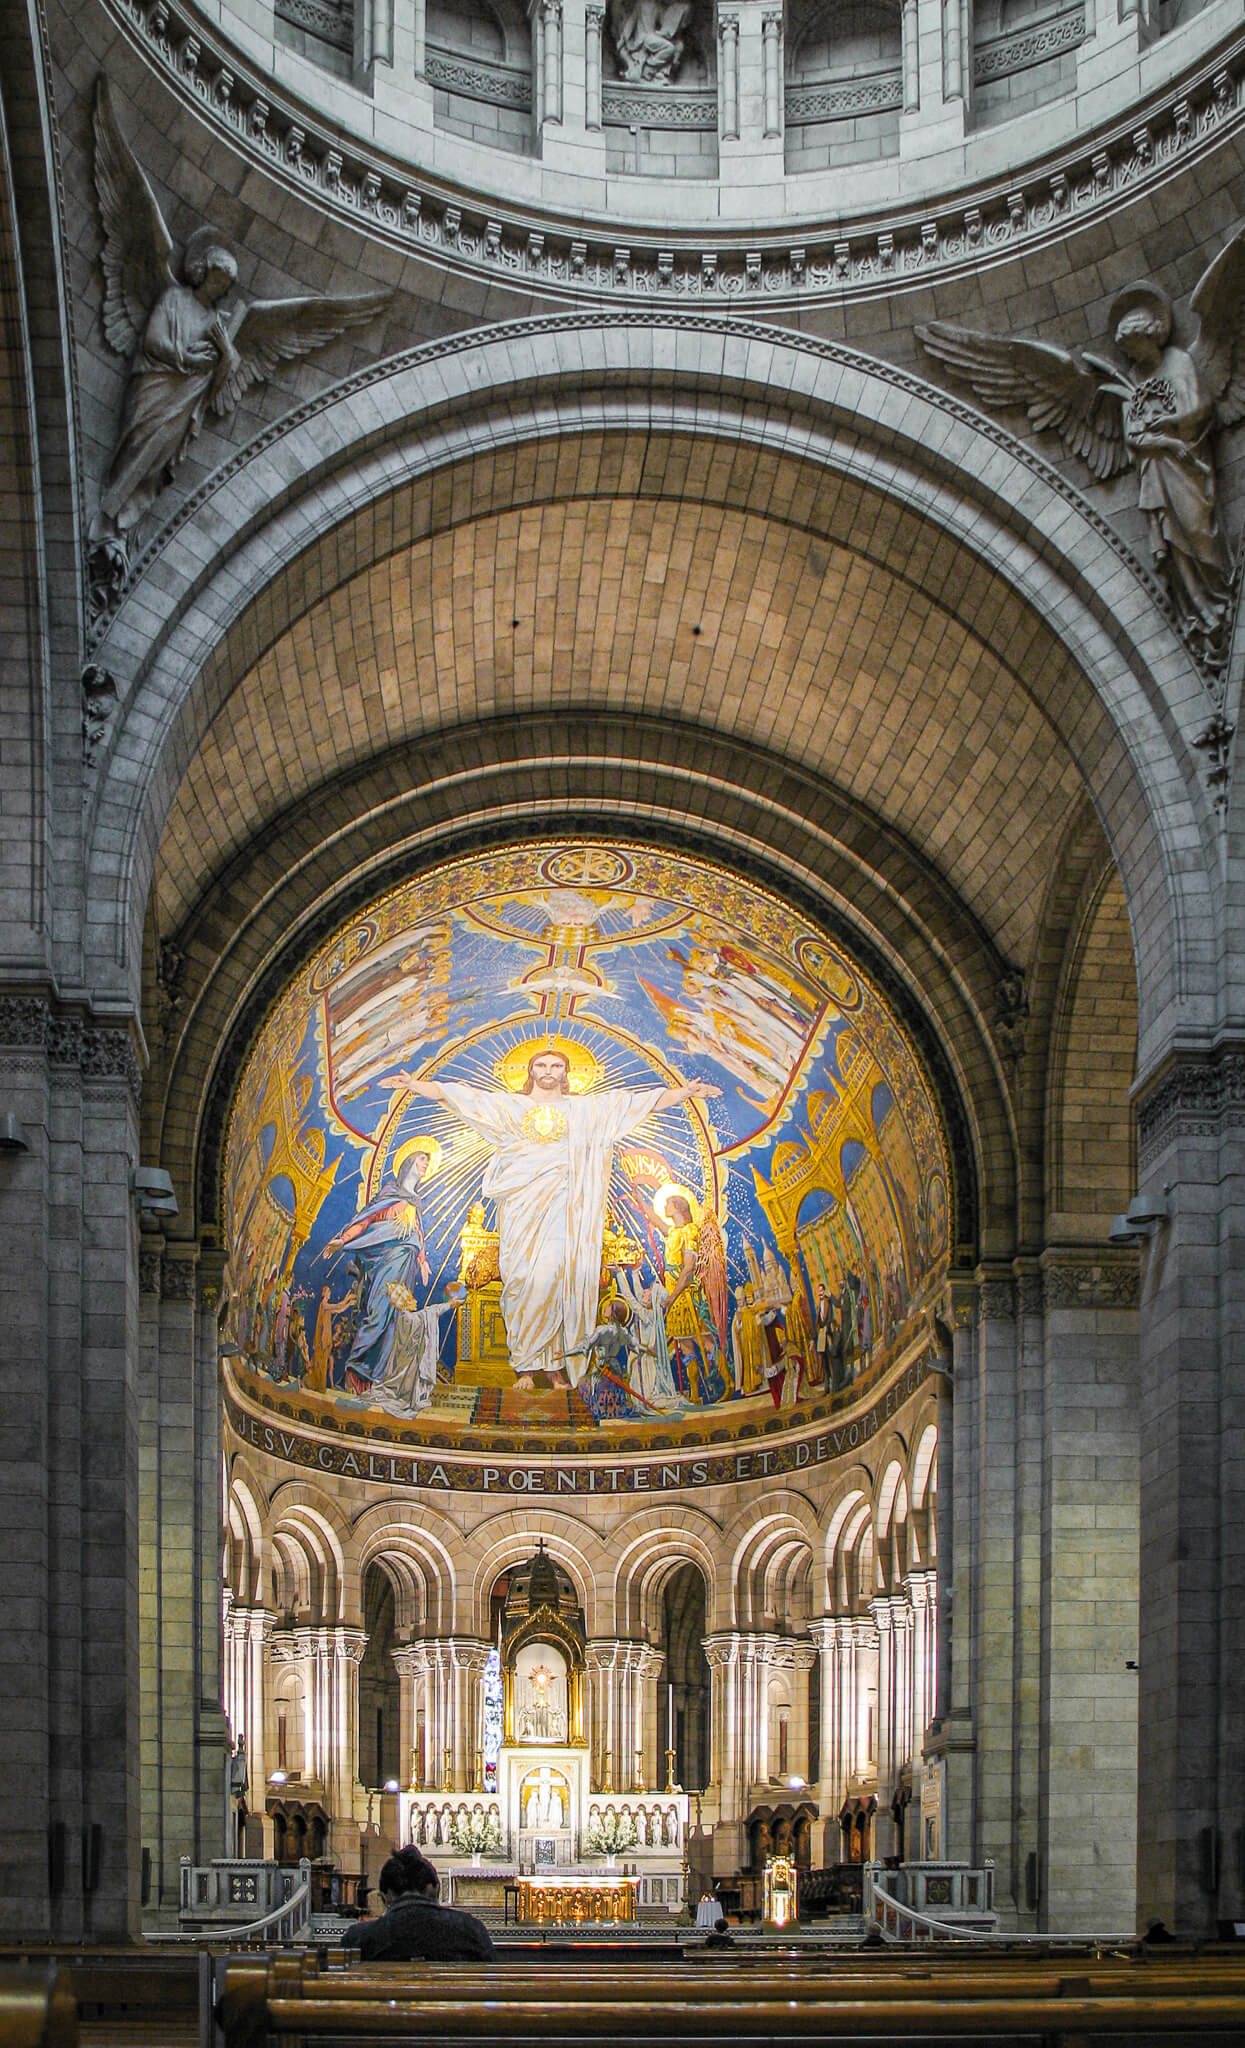 The interior of Sacré-Coeur Basilica in Paris